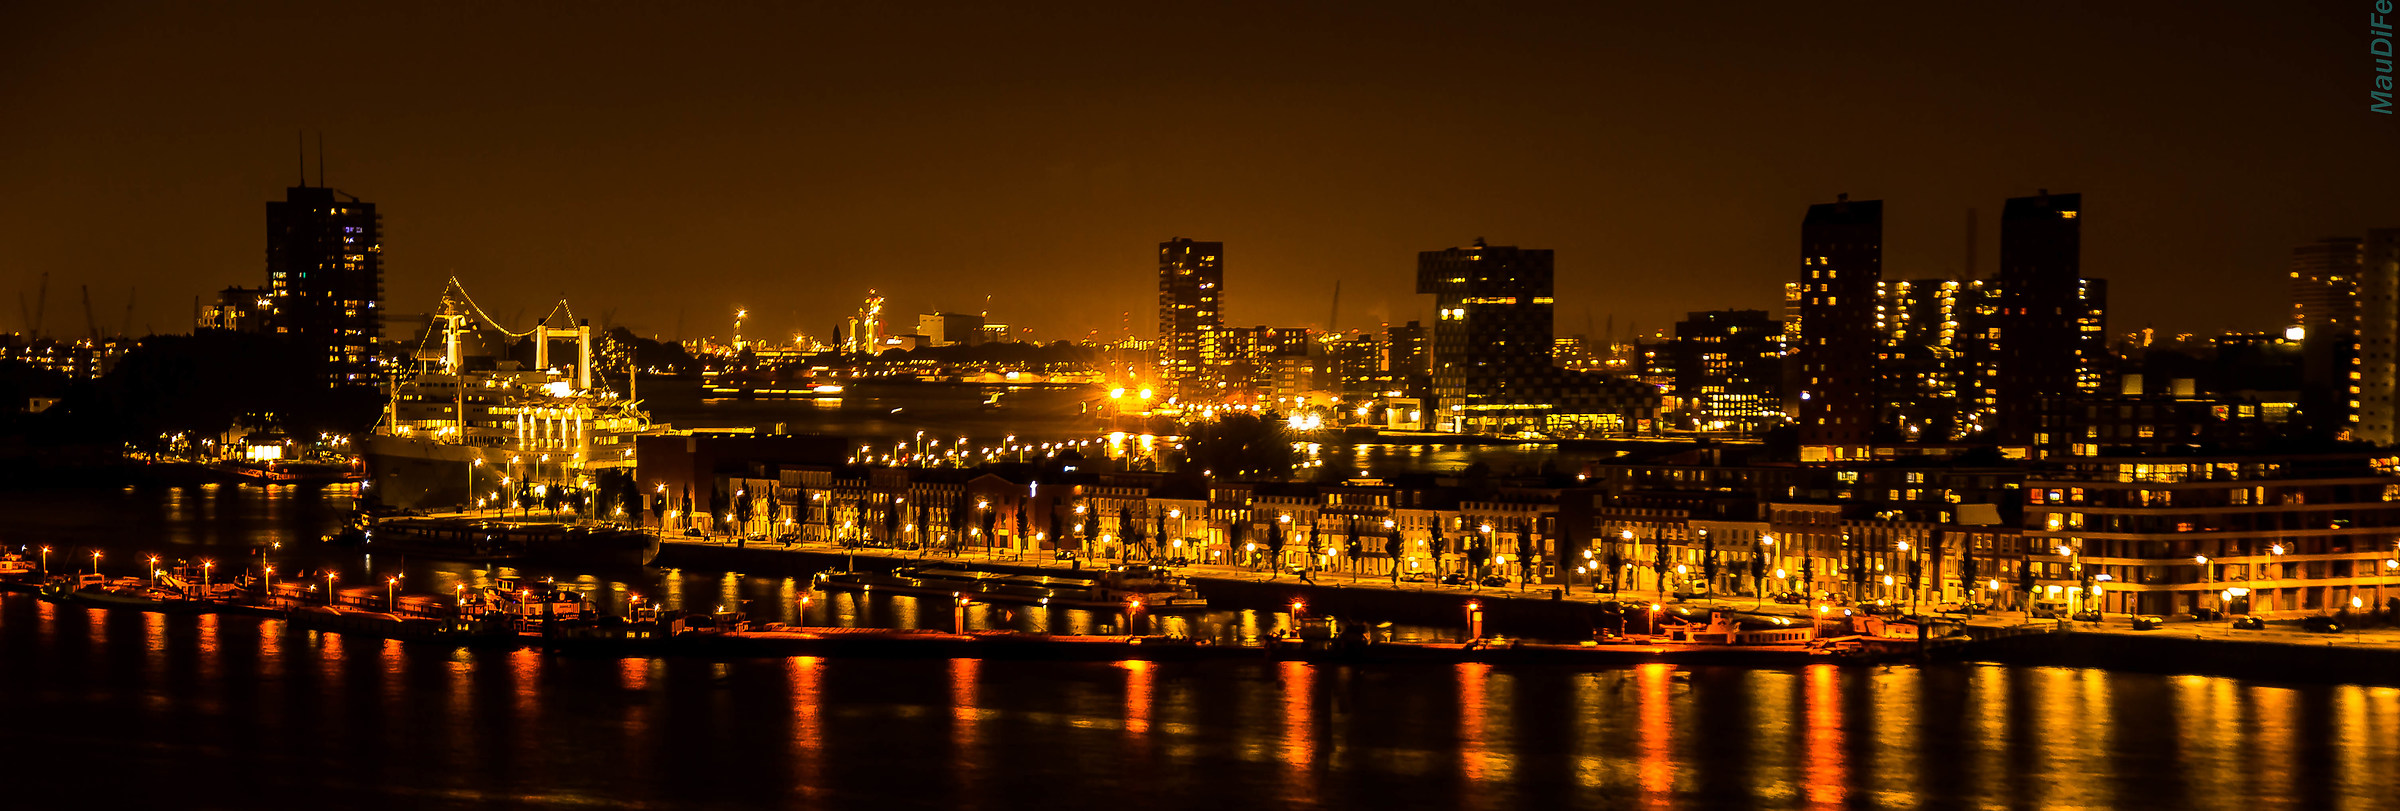 Rotterdam Night Lights...